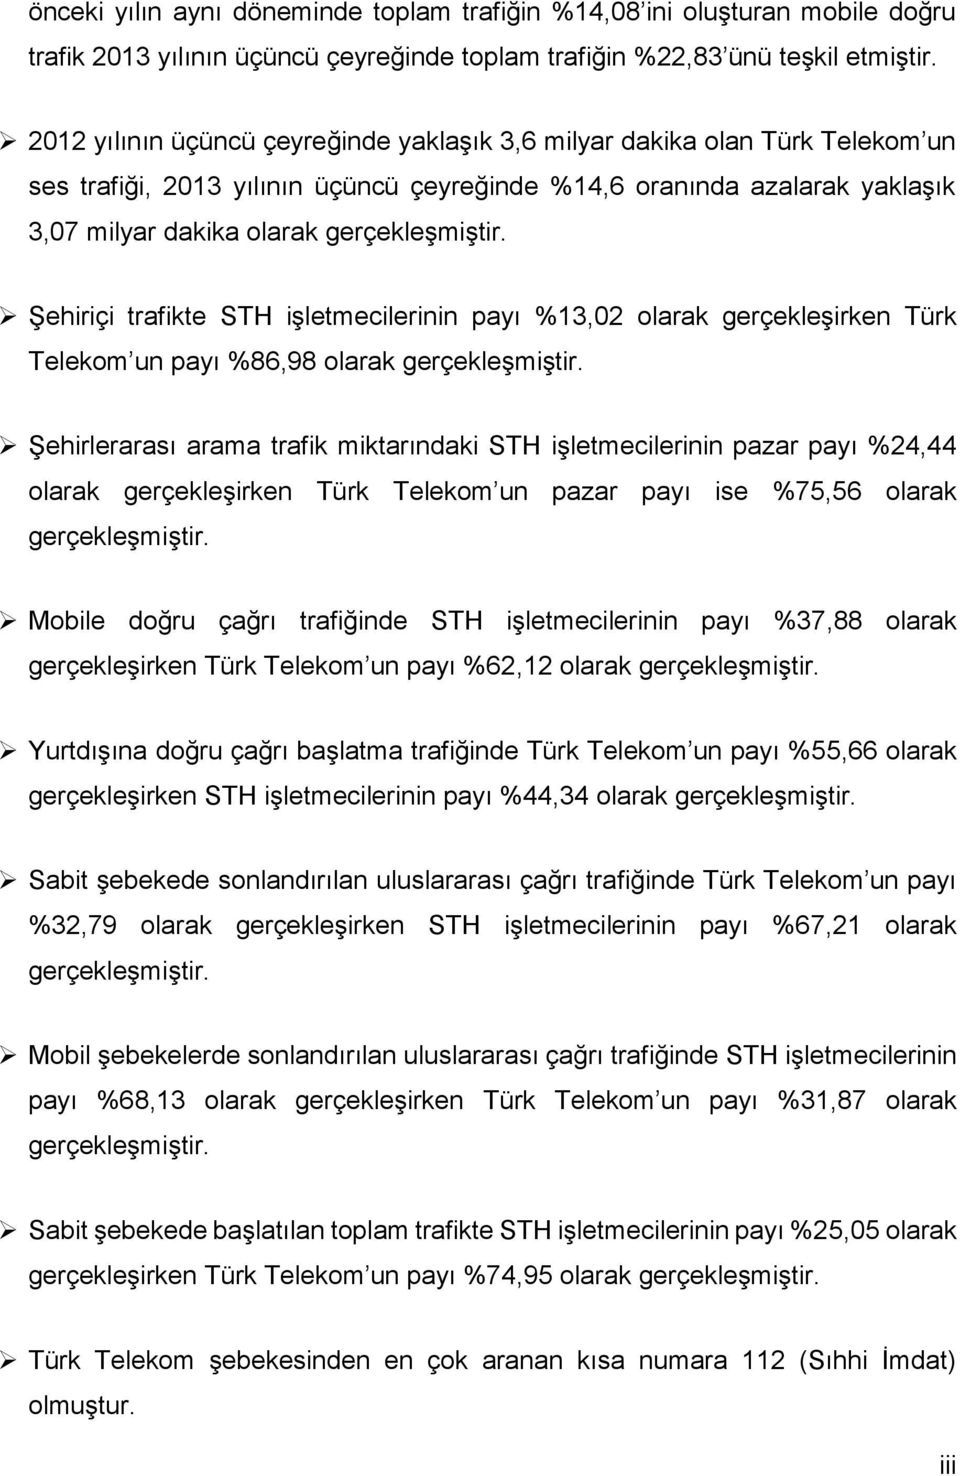 Şehiriçi trafikte STH işletmecilerinin payı %13,2 olarak gerçekleşirken Türk Telekom un payı %86,98 olarak gerçekleşmiştir.